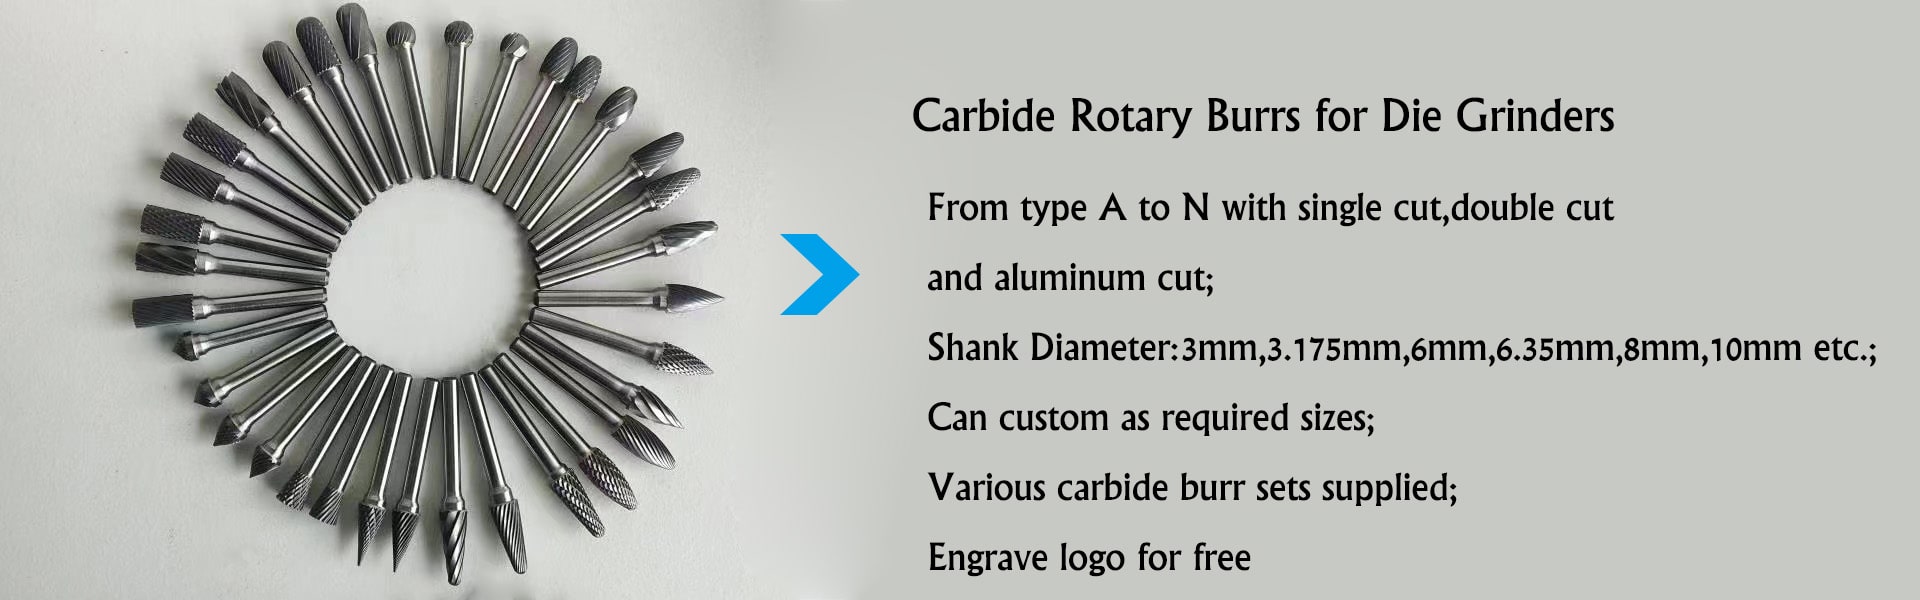 Details of Carbide Rotary Burrs